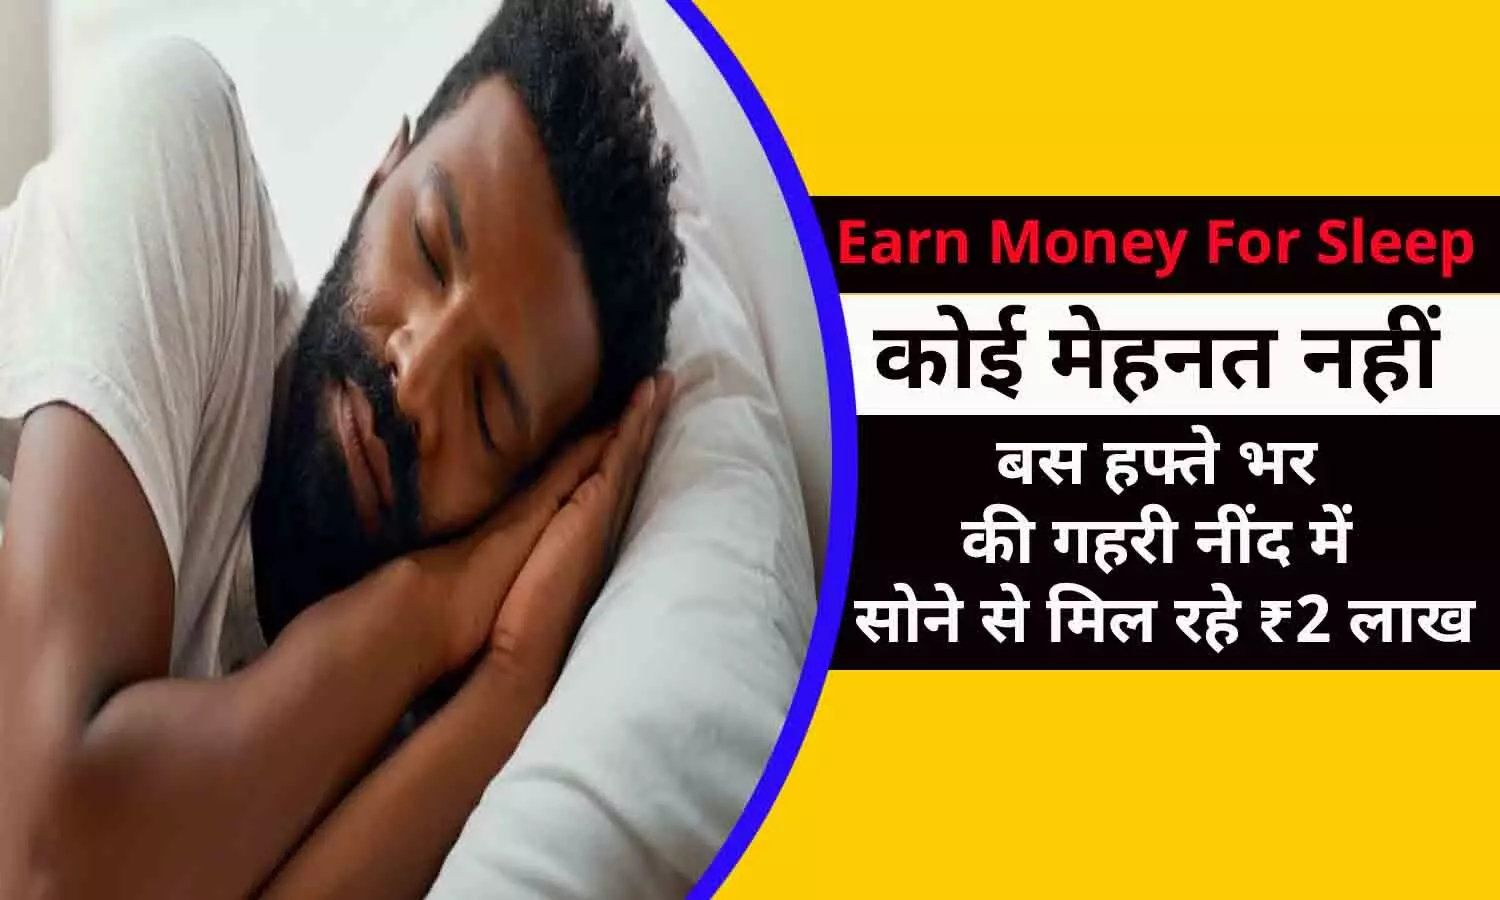 Earn Money For Sleep